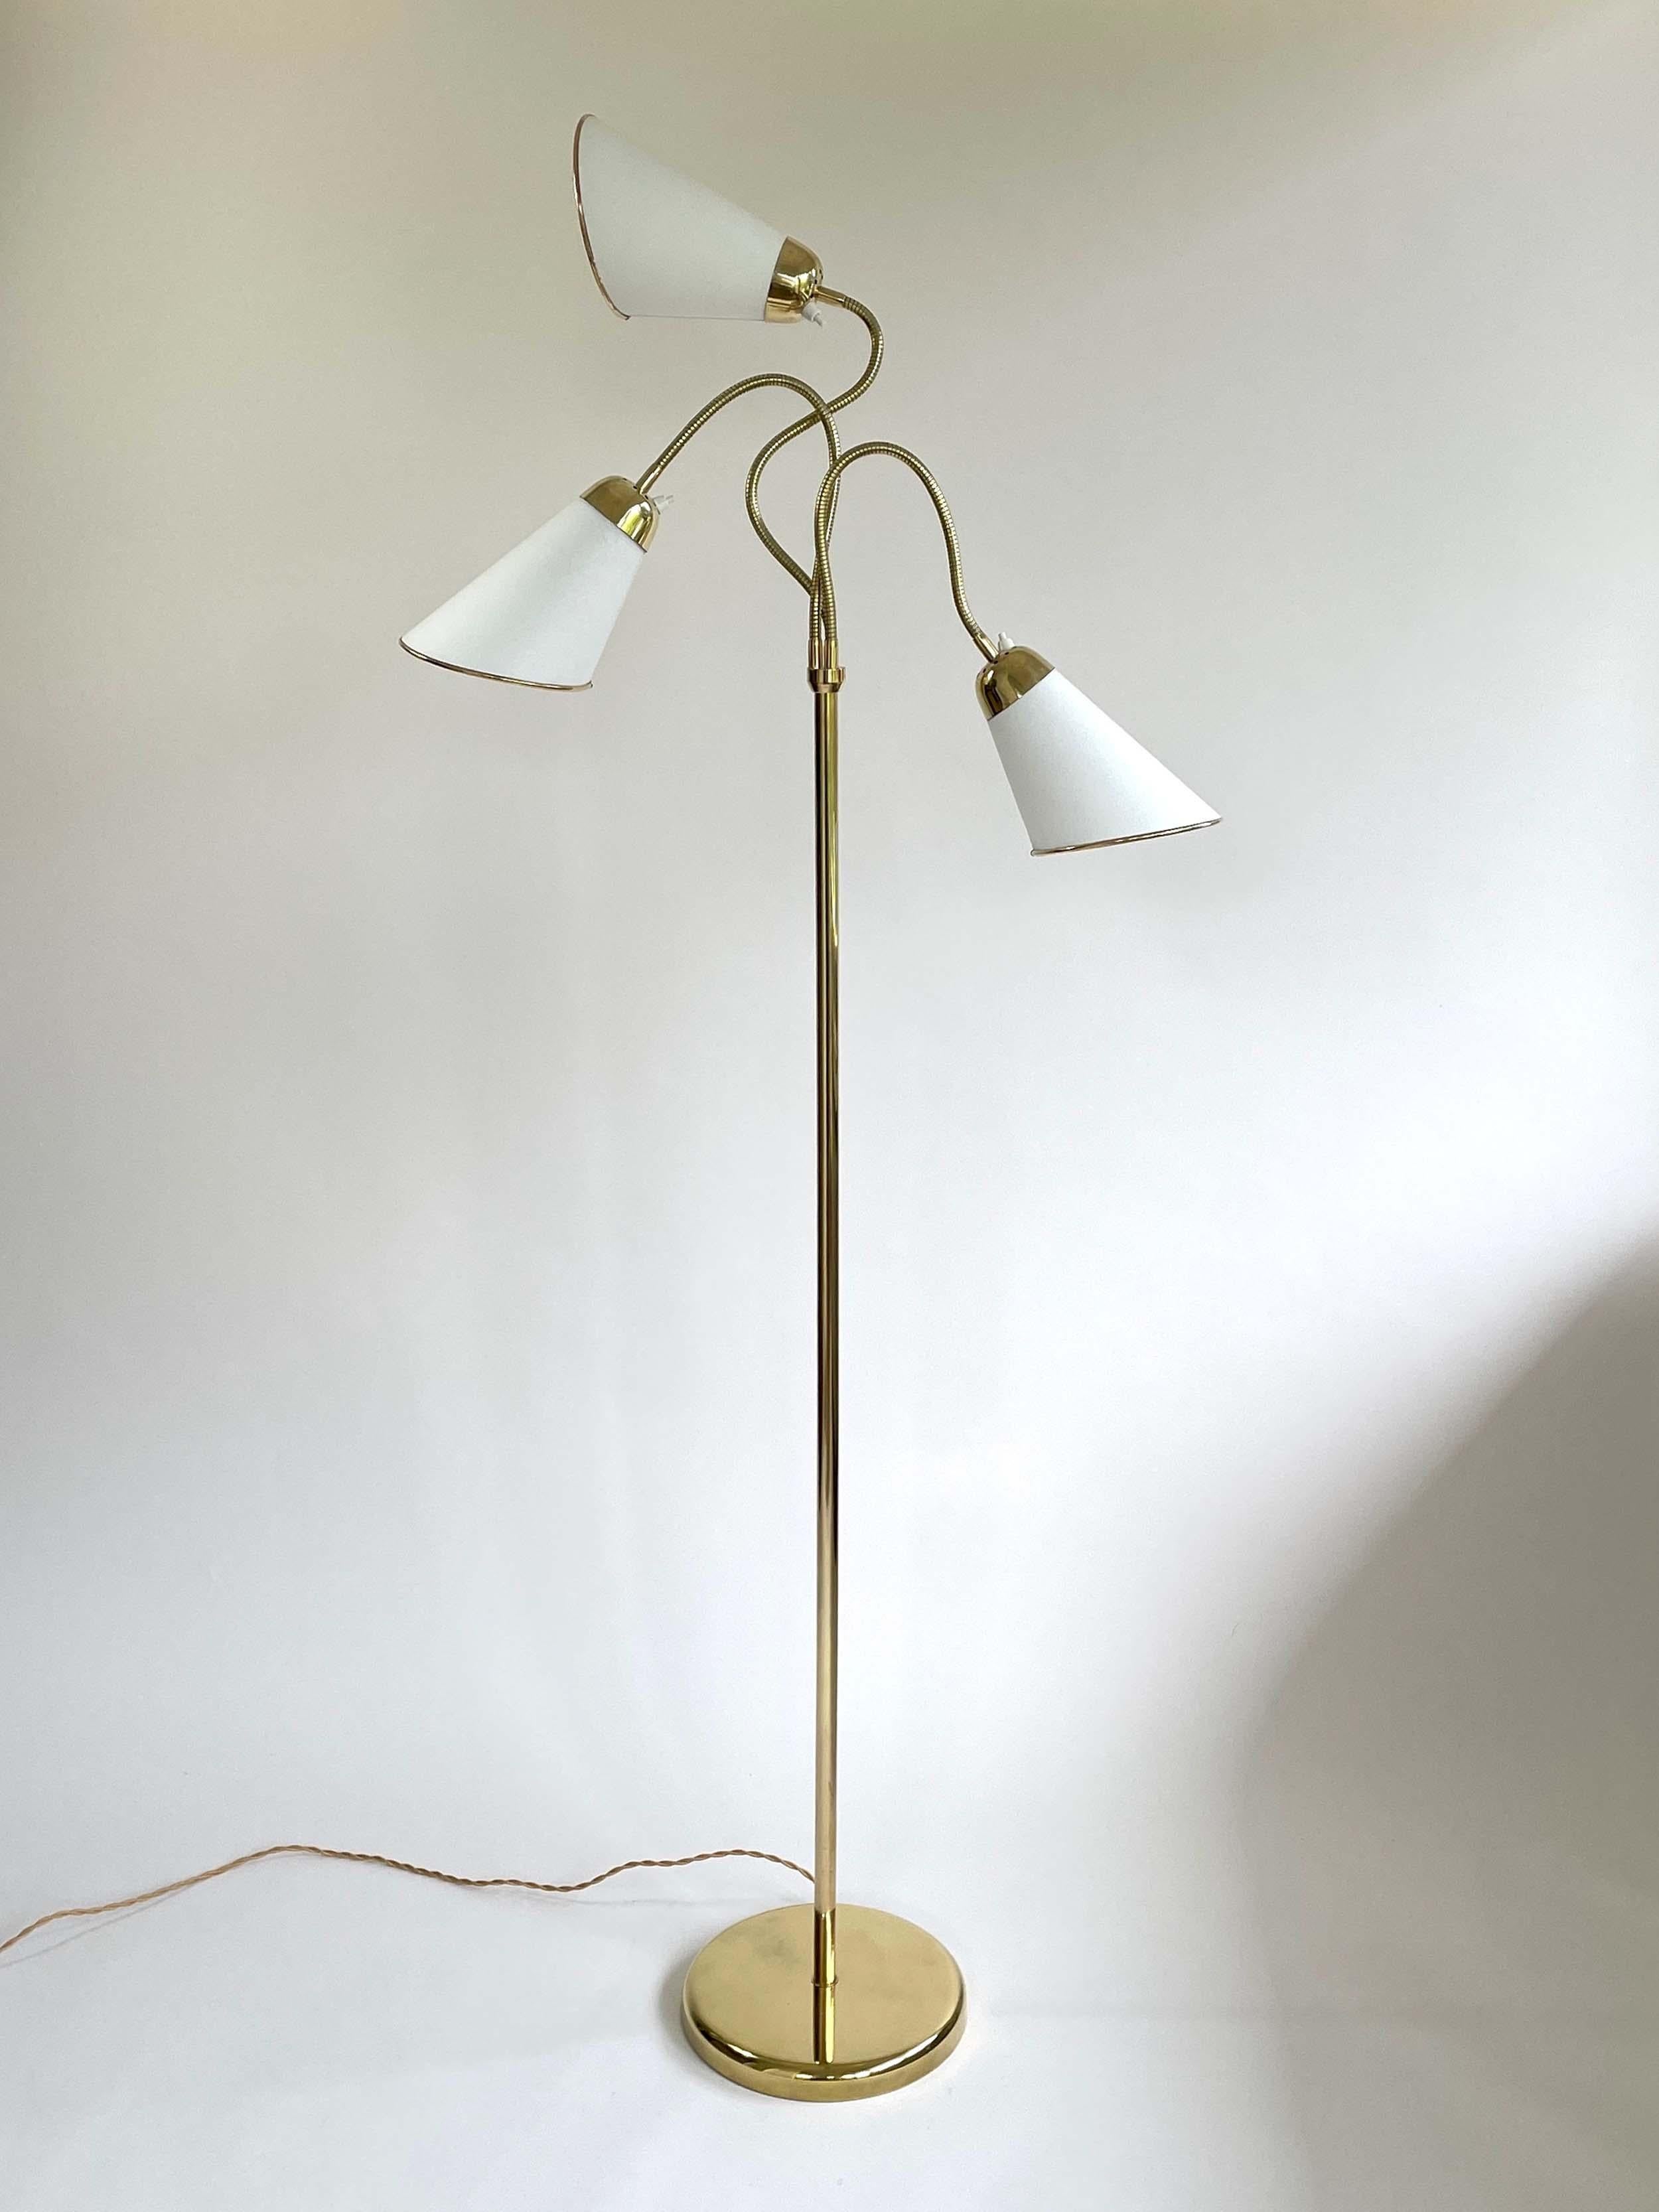 Triple Gooseneck Brass & Off White Fabric Floor Lamp, Sweden 1950s For Sale 1